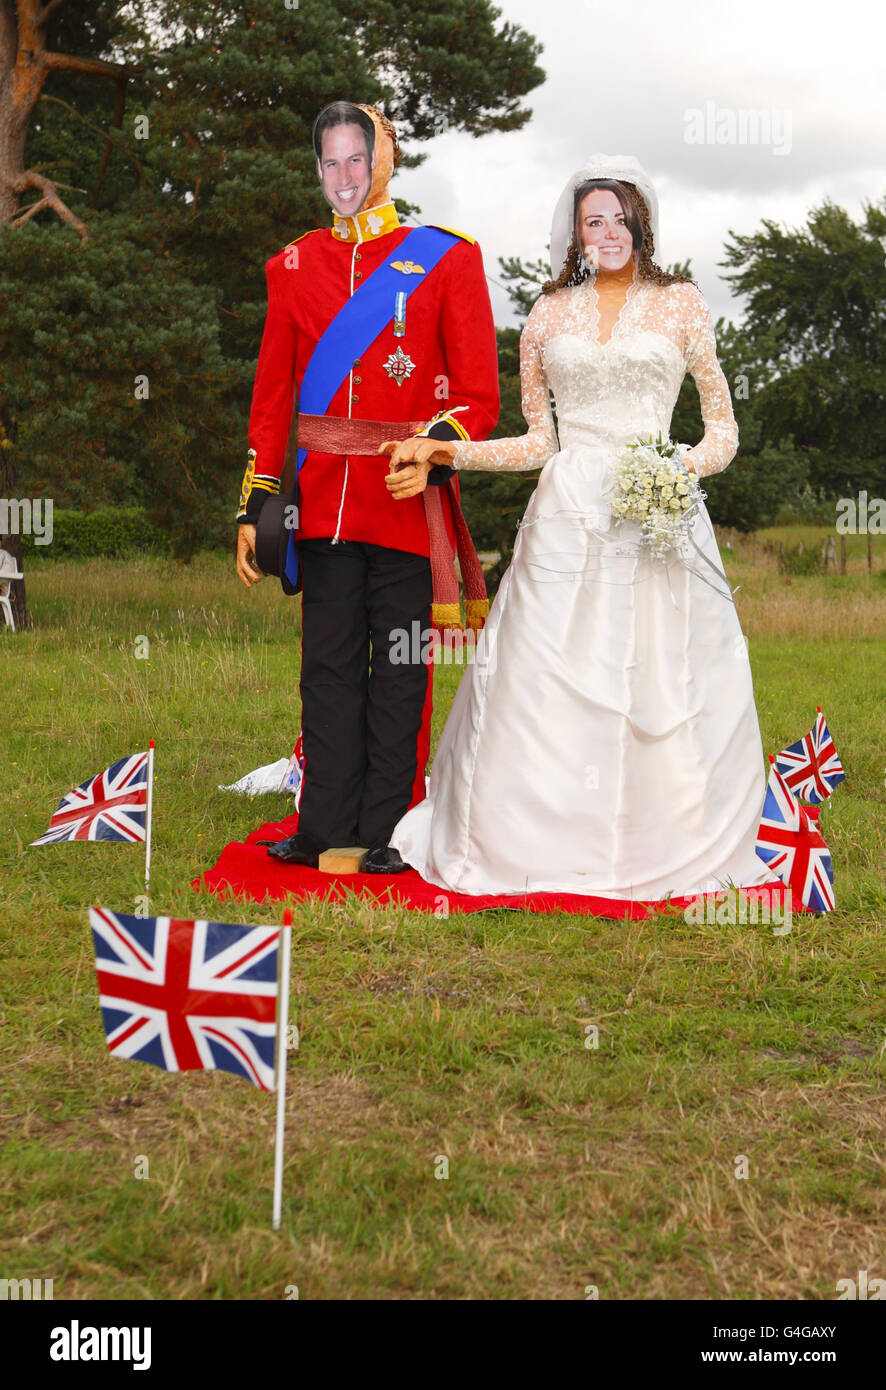 Le mariage du prince William à Katherine Middleton, aujourd'hui duc et duchesse de Cambridge, est recréé dans un champ du festival de Bisterne Scarecrow, près de Ringwood, dans le Hampshire. Banque D'Images